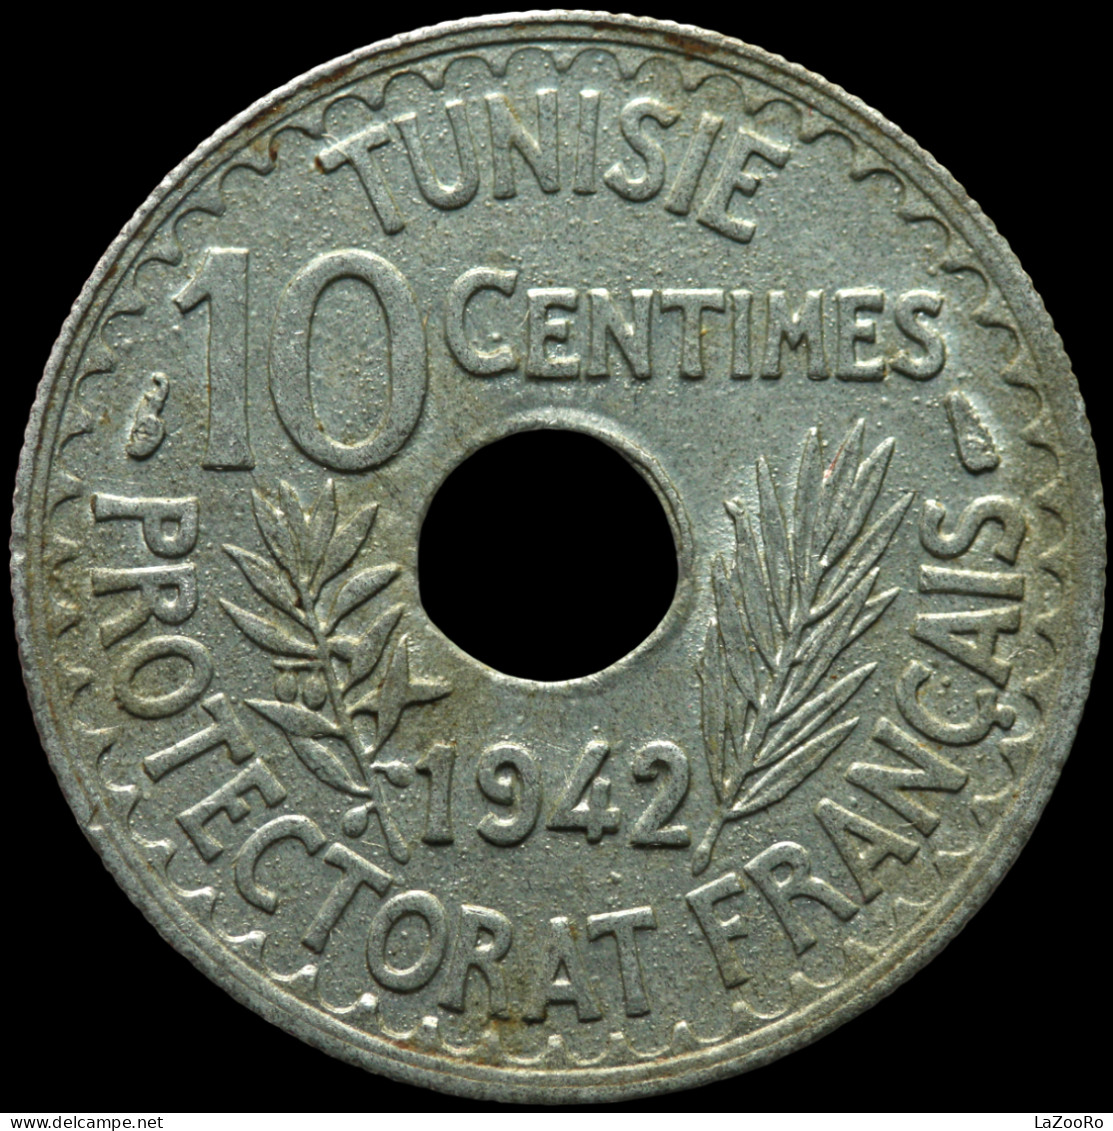 LaZooRo: Tunisia 10 Centimes 1942 UNC - Tunisie